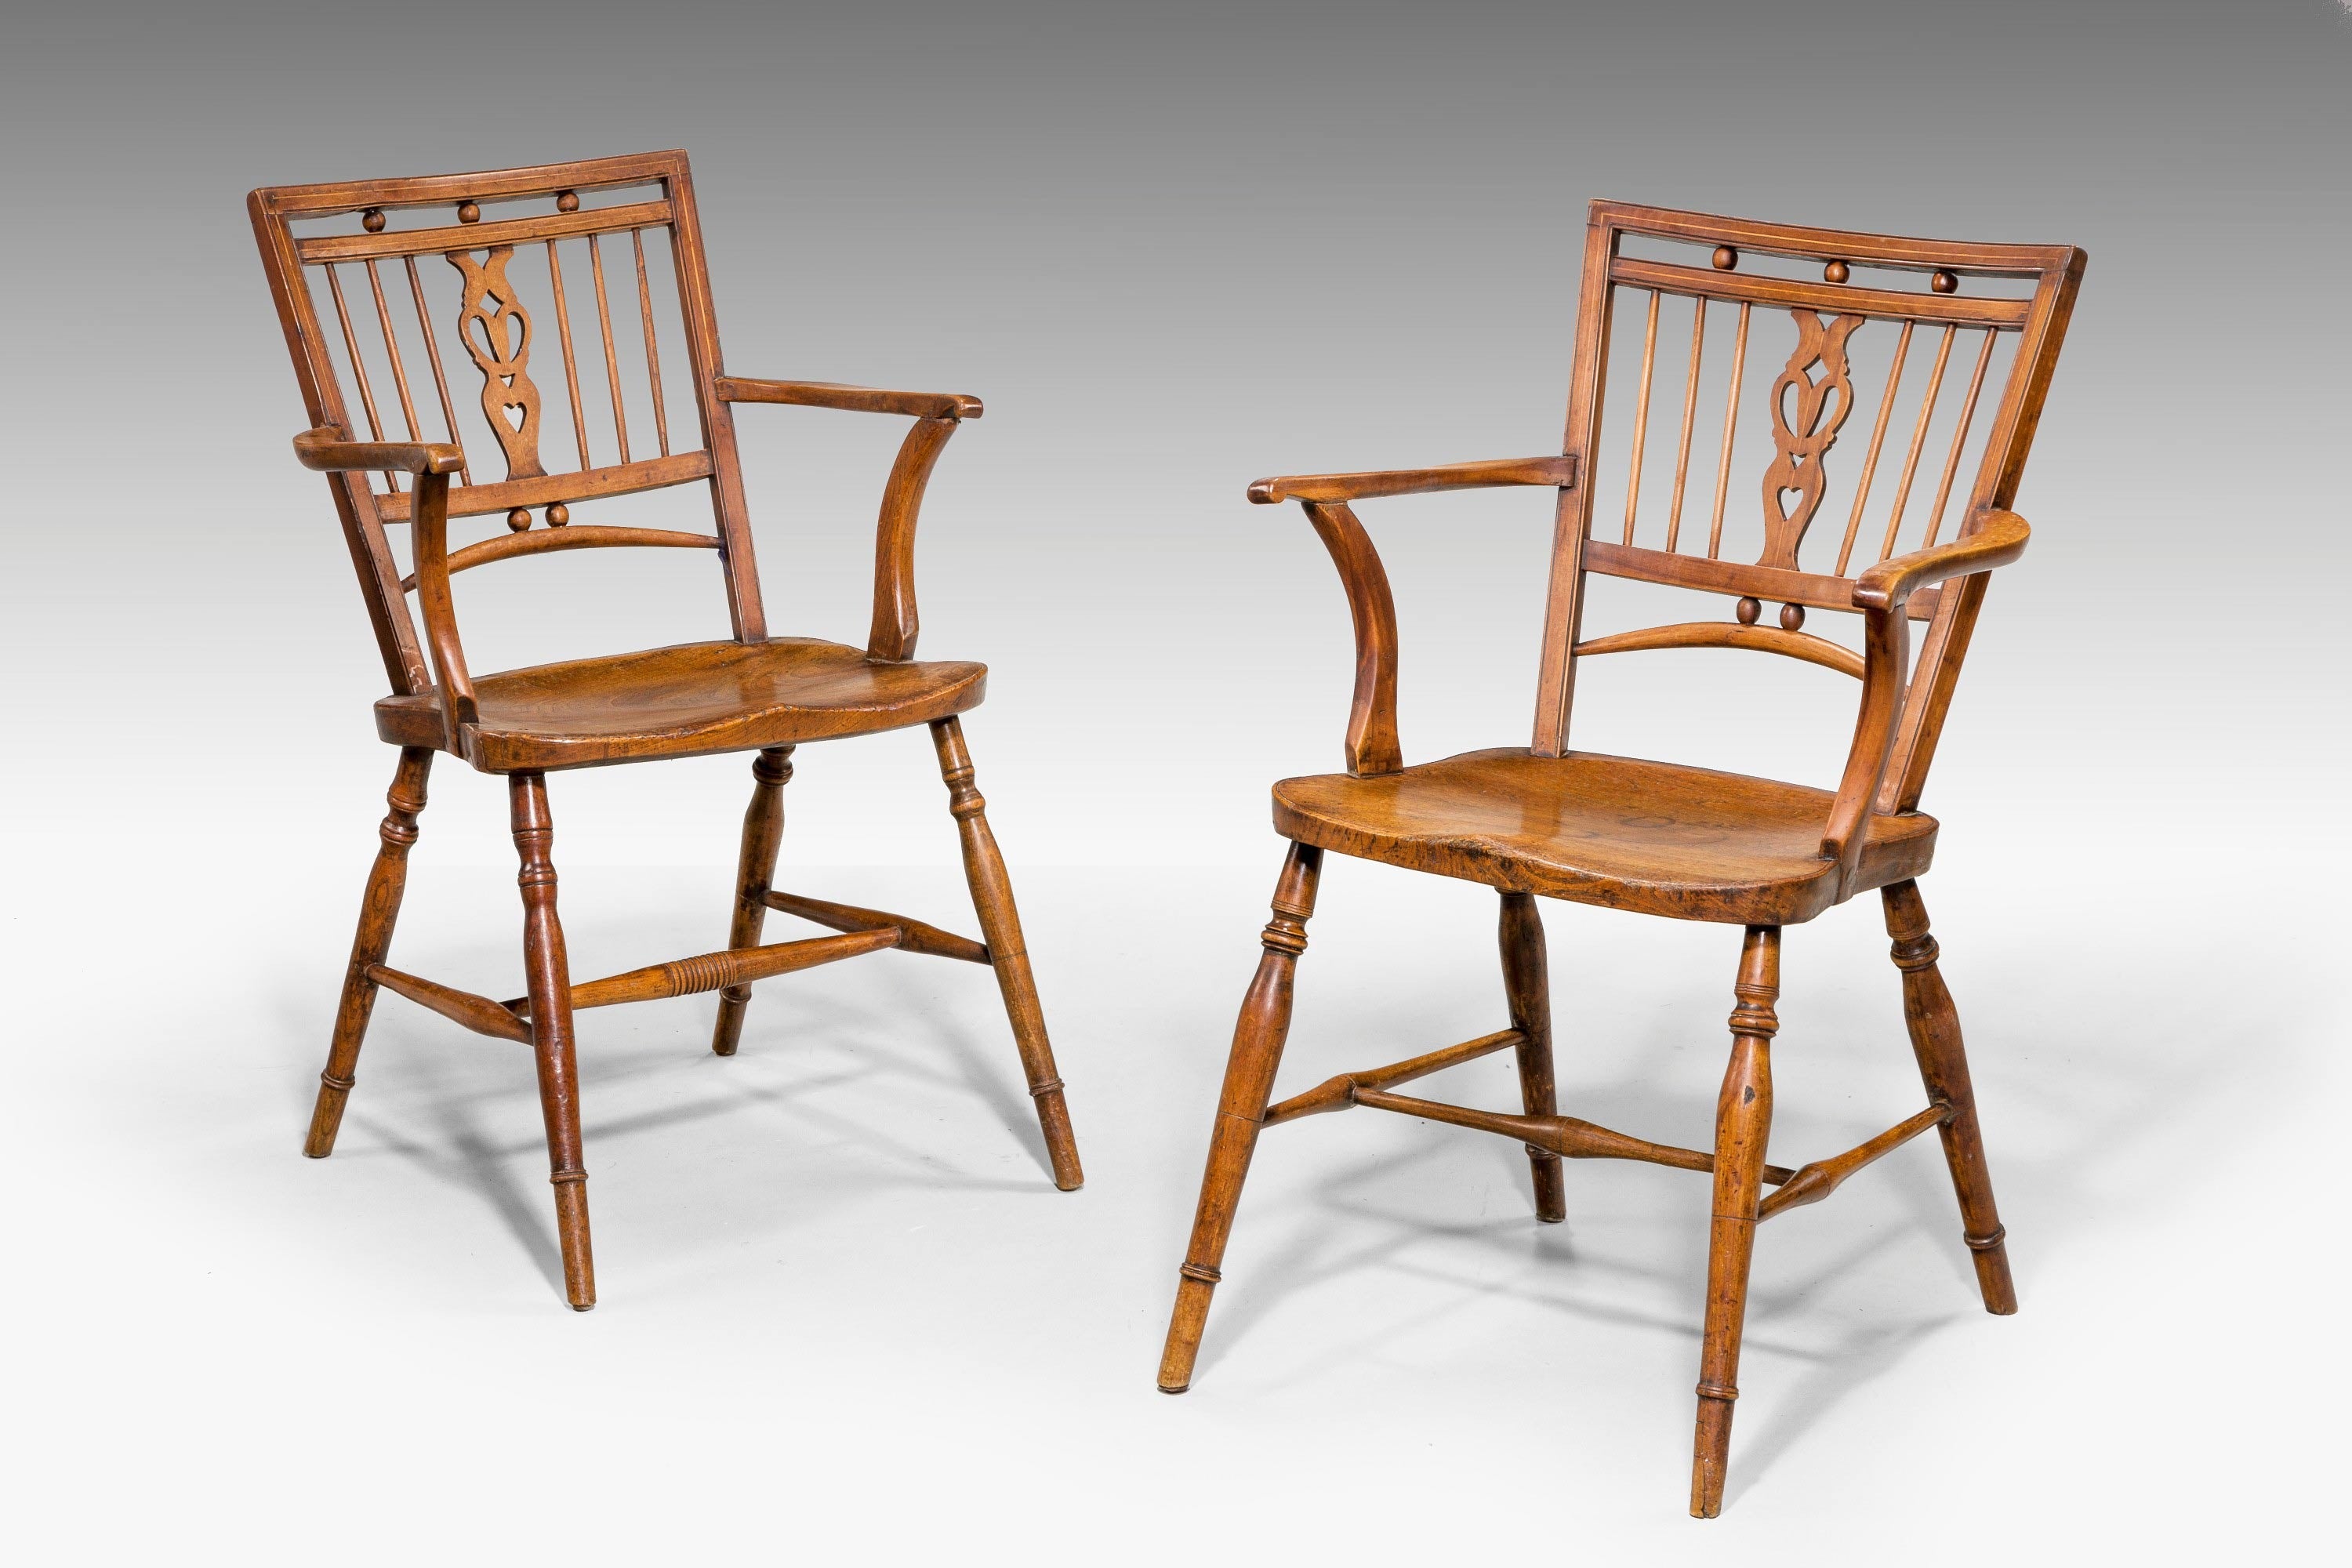 Pair of 18th Century Mendlesham Windsor Chairs